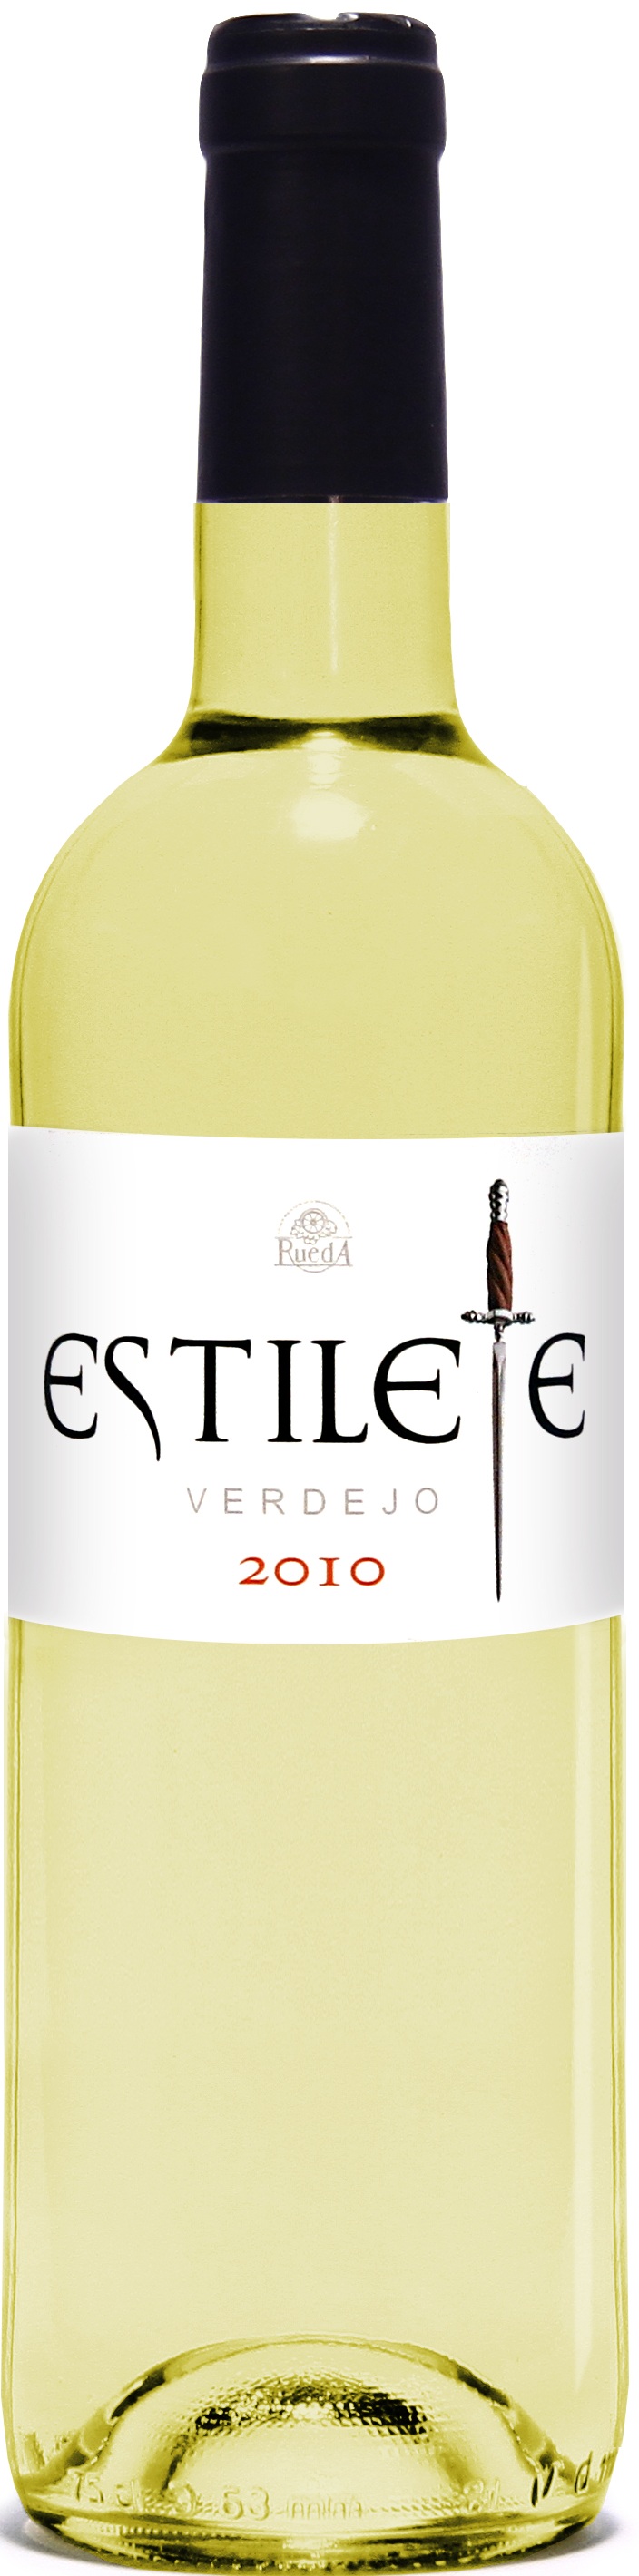 Imagen de la botella de Vino Estilete Verdejo